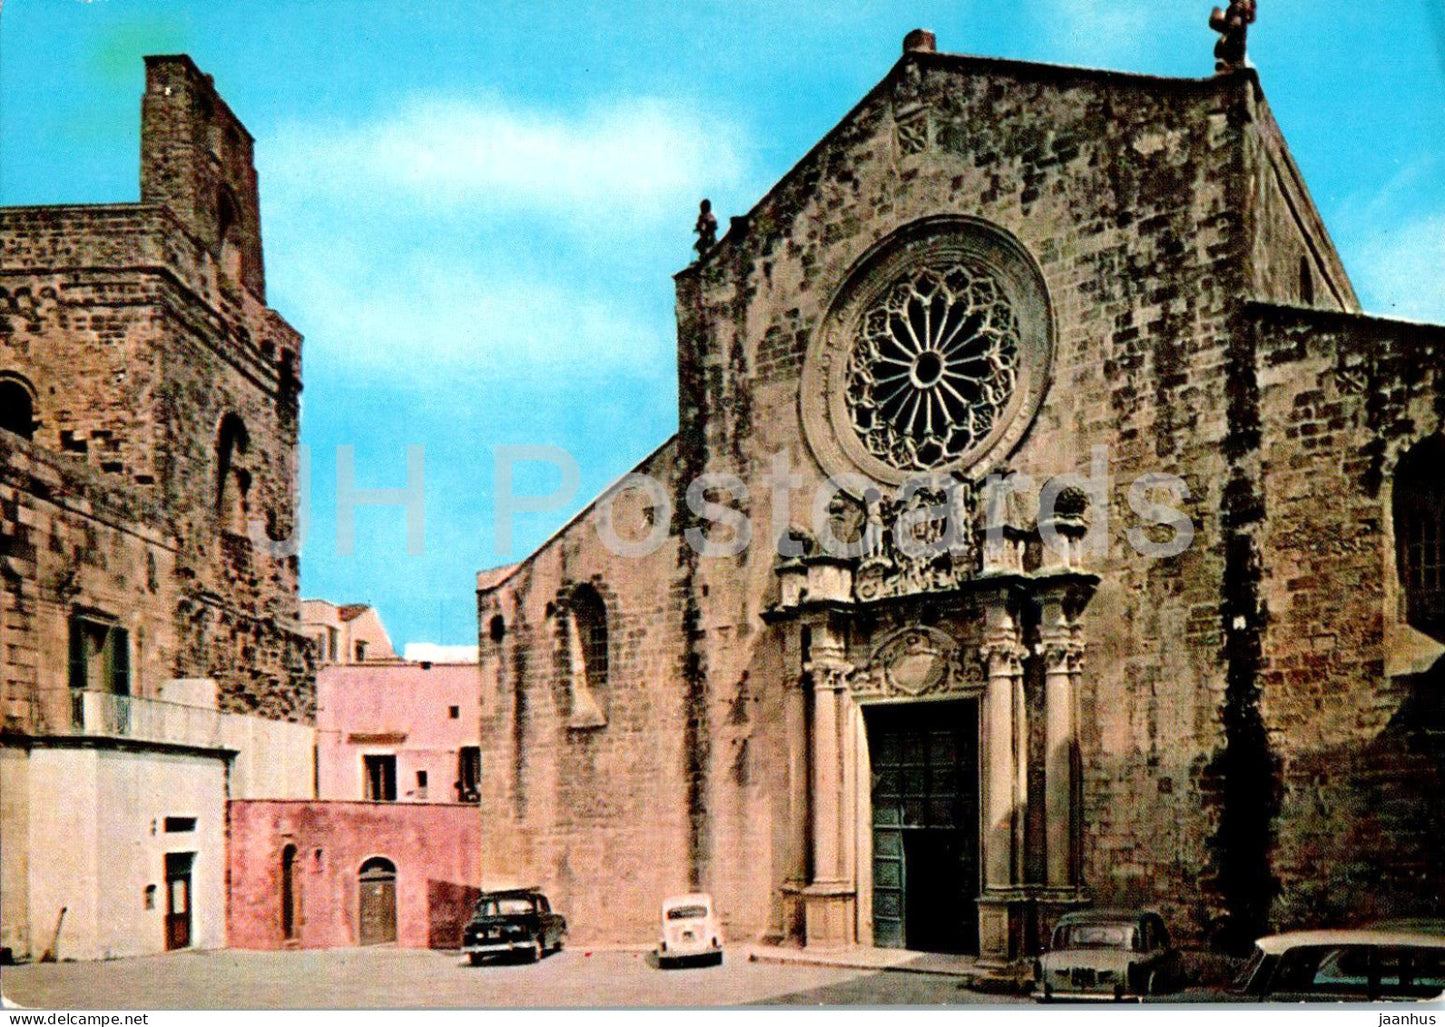 Otranto - Fronte della Basilica - front of the Basilica - 93 - Italy - used - JH Postcards